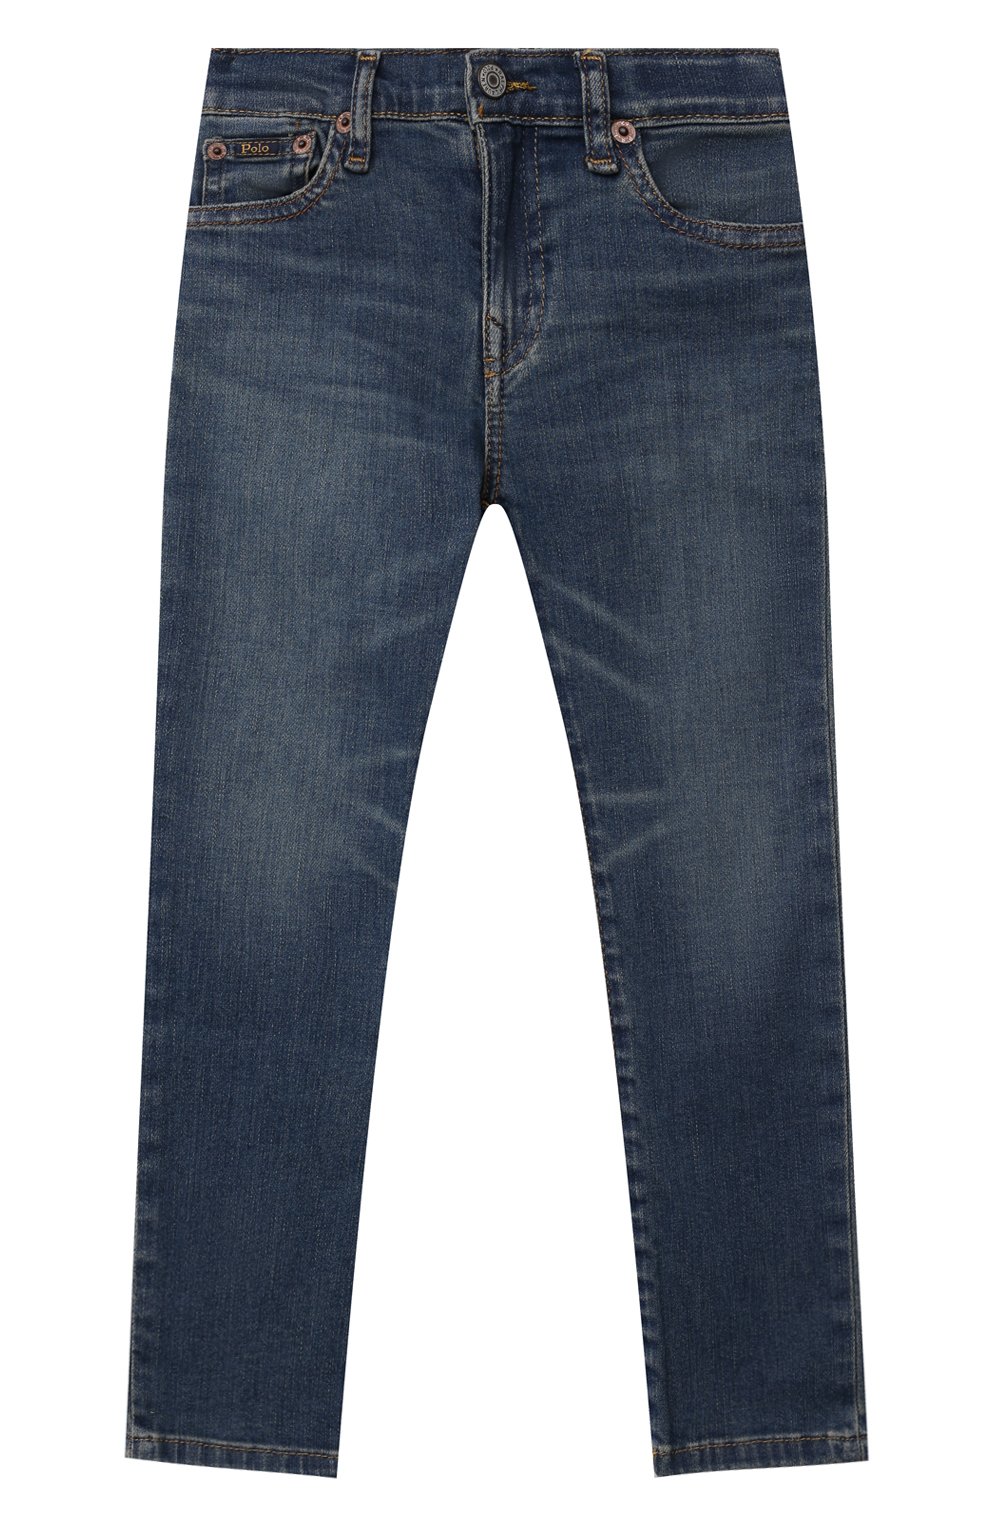 Детские джинсы POLO RALPH LAUREN синего цвета, арт. 321854001 | Фото 1 (Материал внешний: Хлопок; Детали: Потертости; Ростовка одежда: 18 мес | 86 см, 3 года | 98 см, 4 года | 104 см)